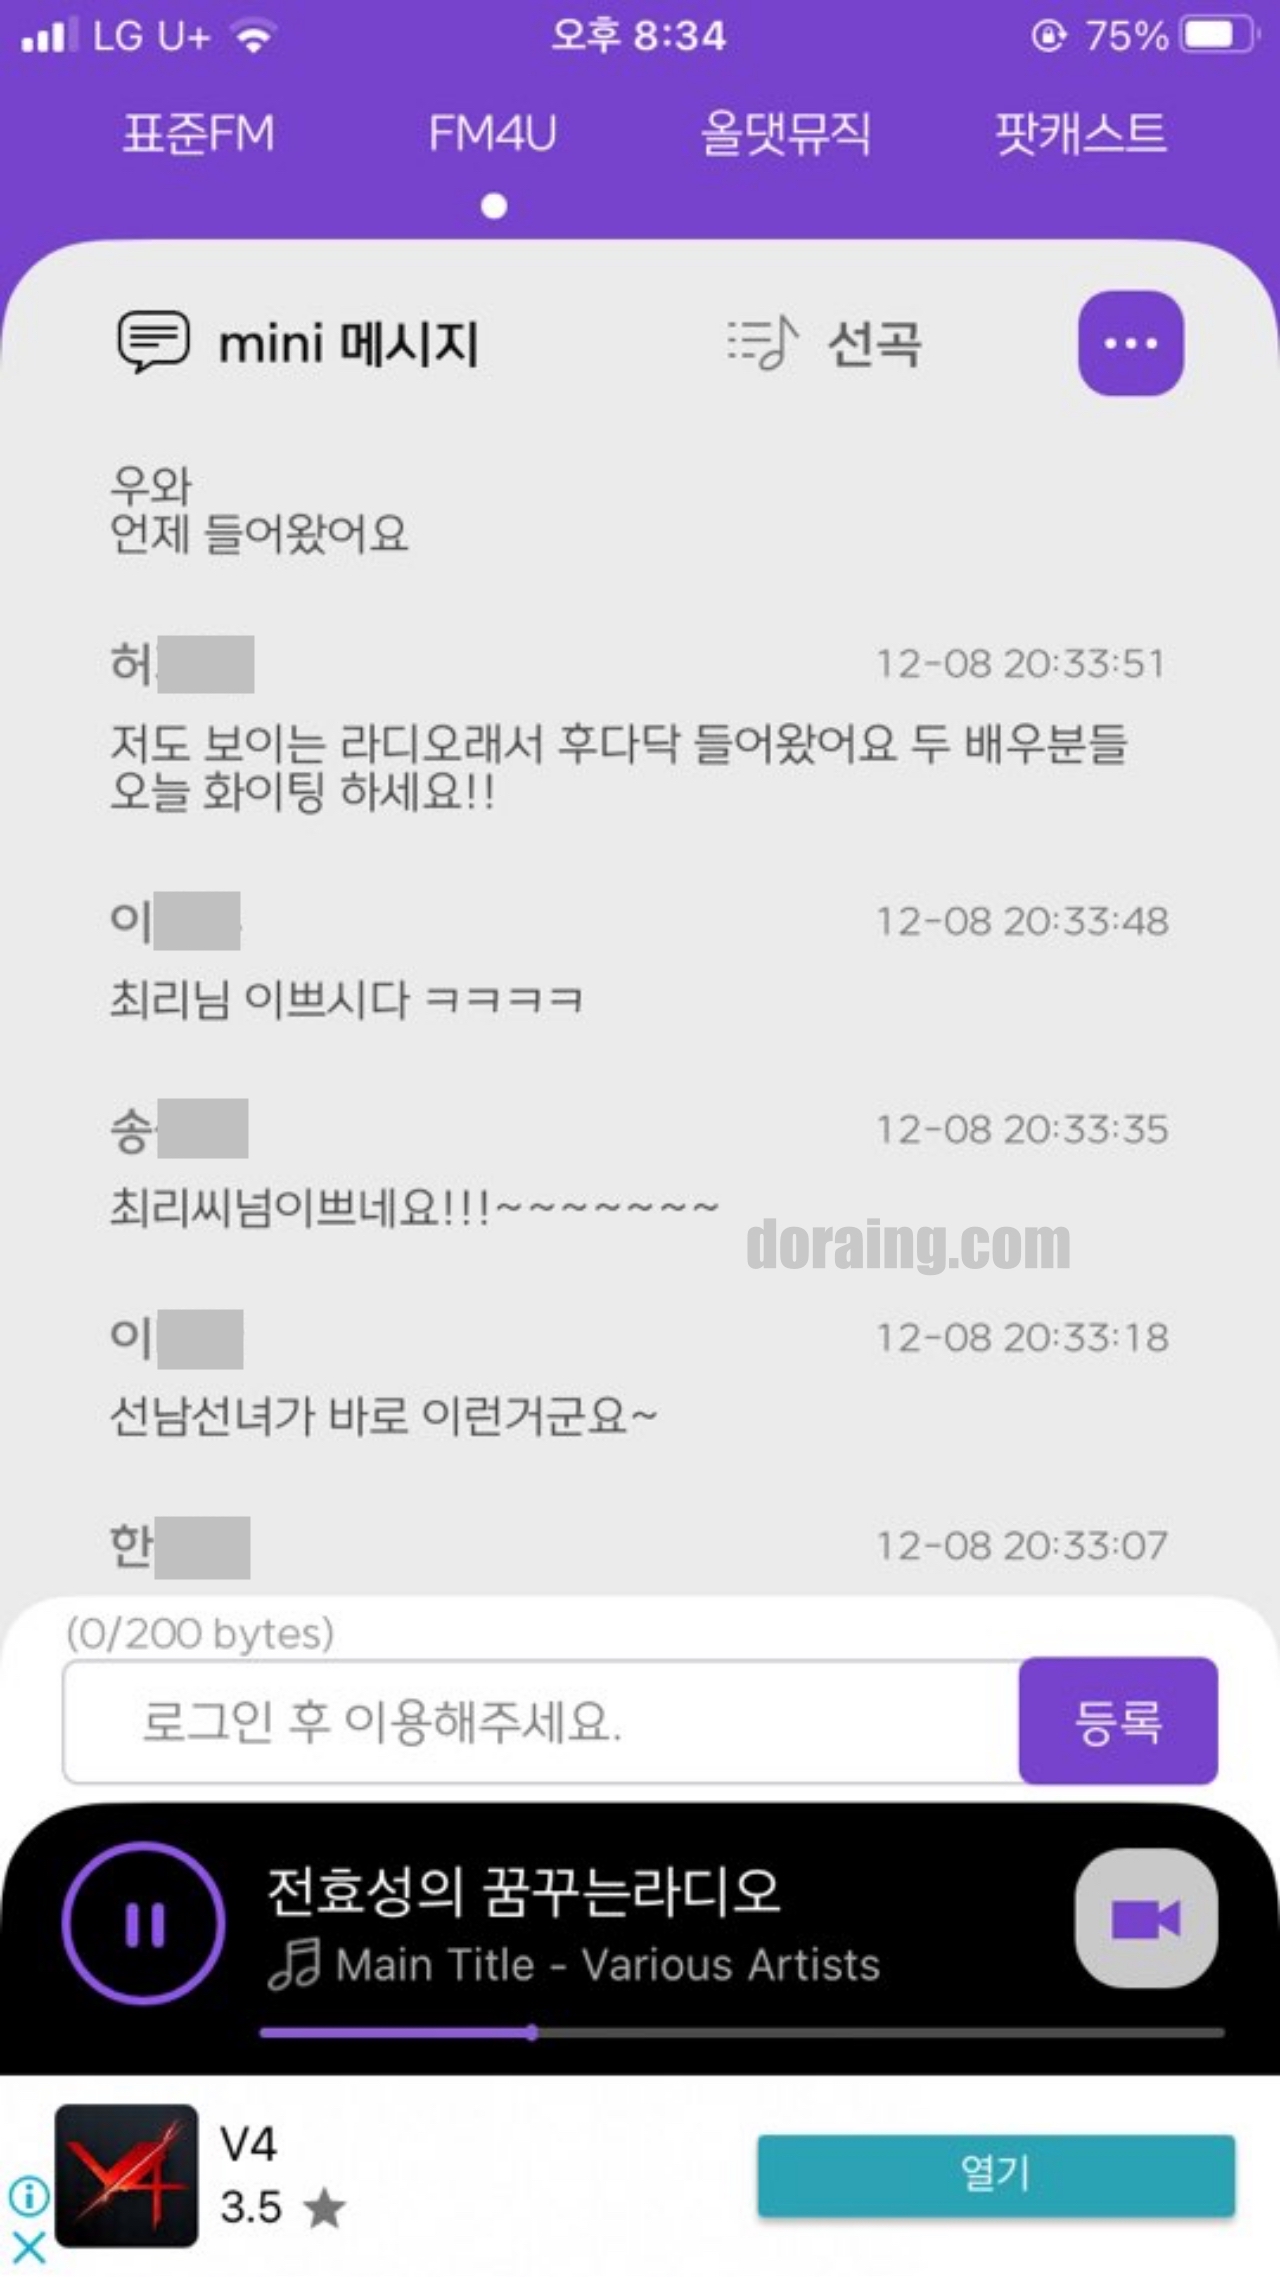 엠비씨 라디오 미니 다운로드 MBC mini